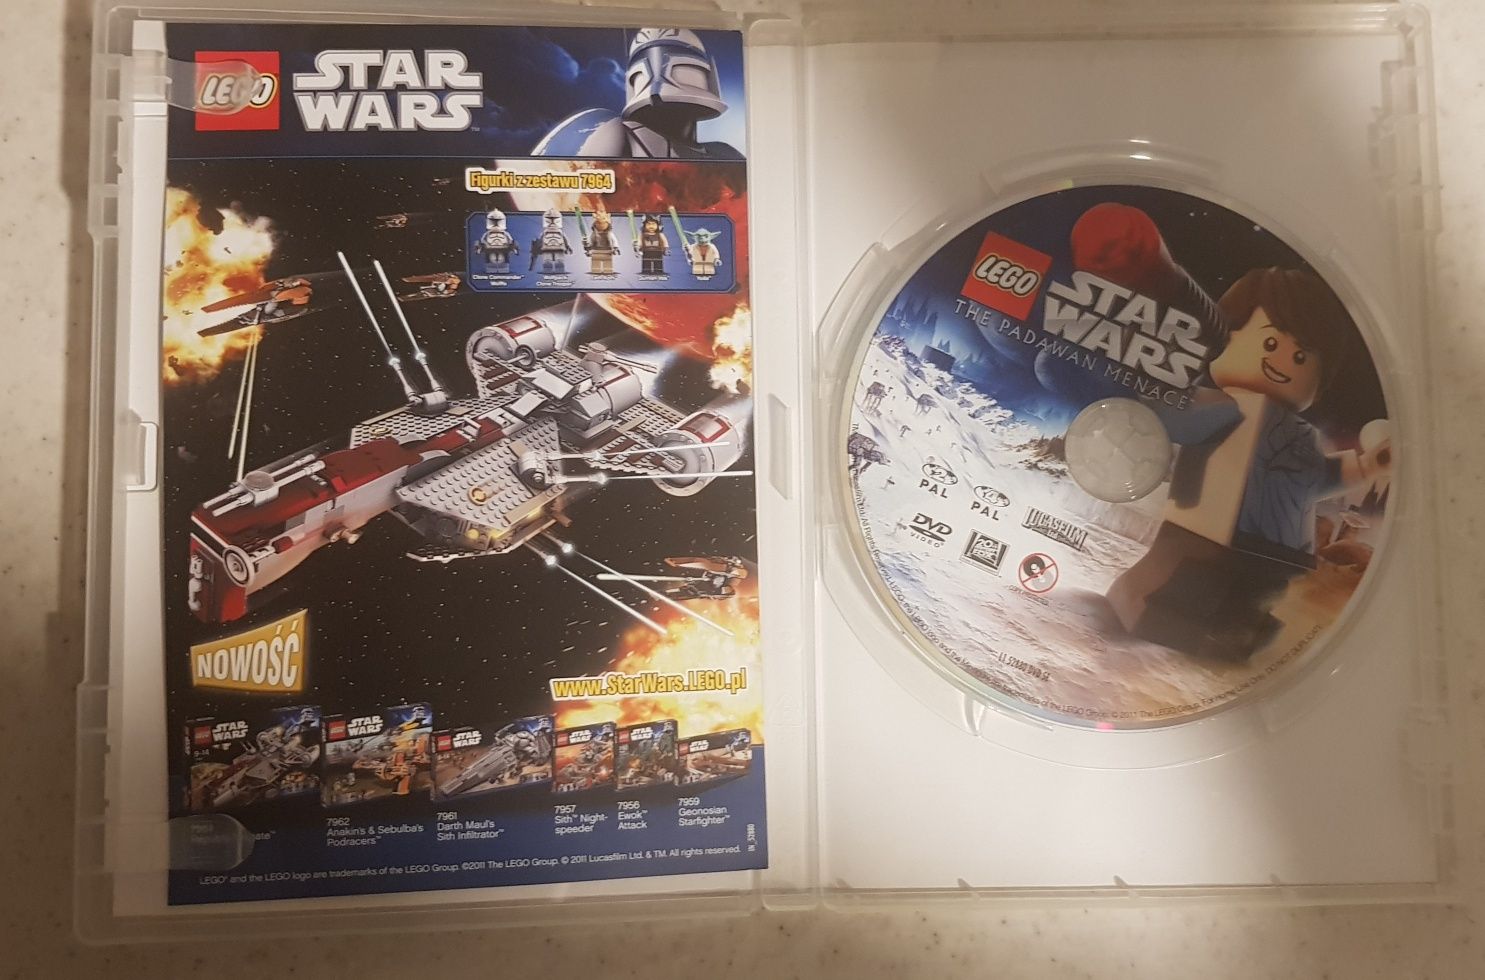 Lego Star Wars Padawanskie Widmo DVD